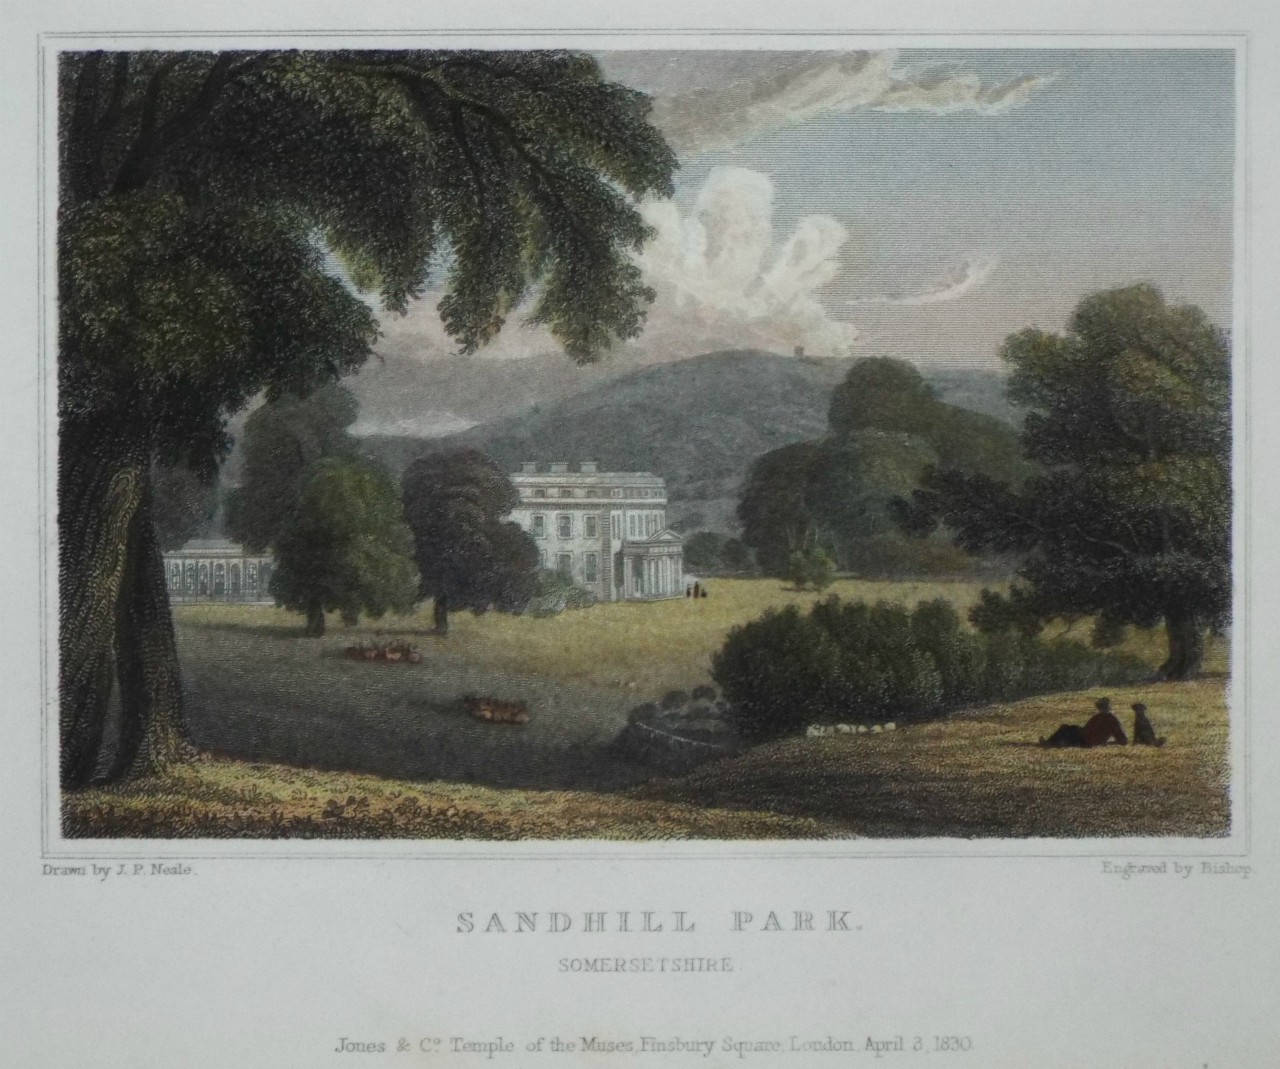 Print - Sandhill Park, Somersetshire - 